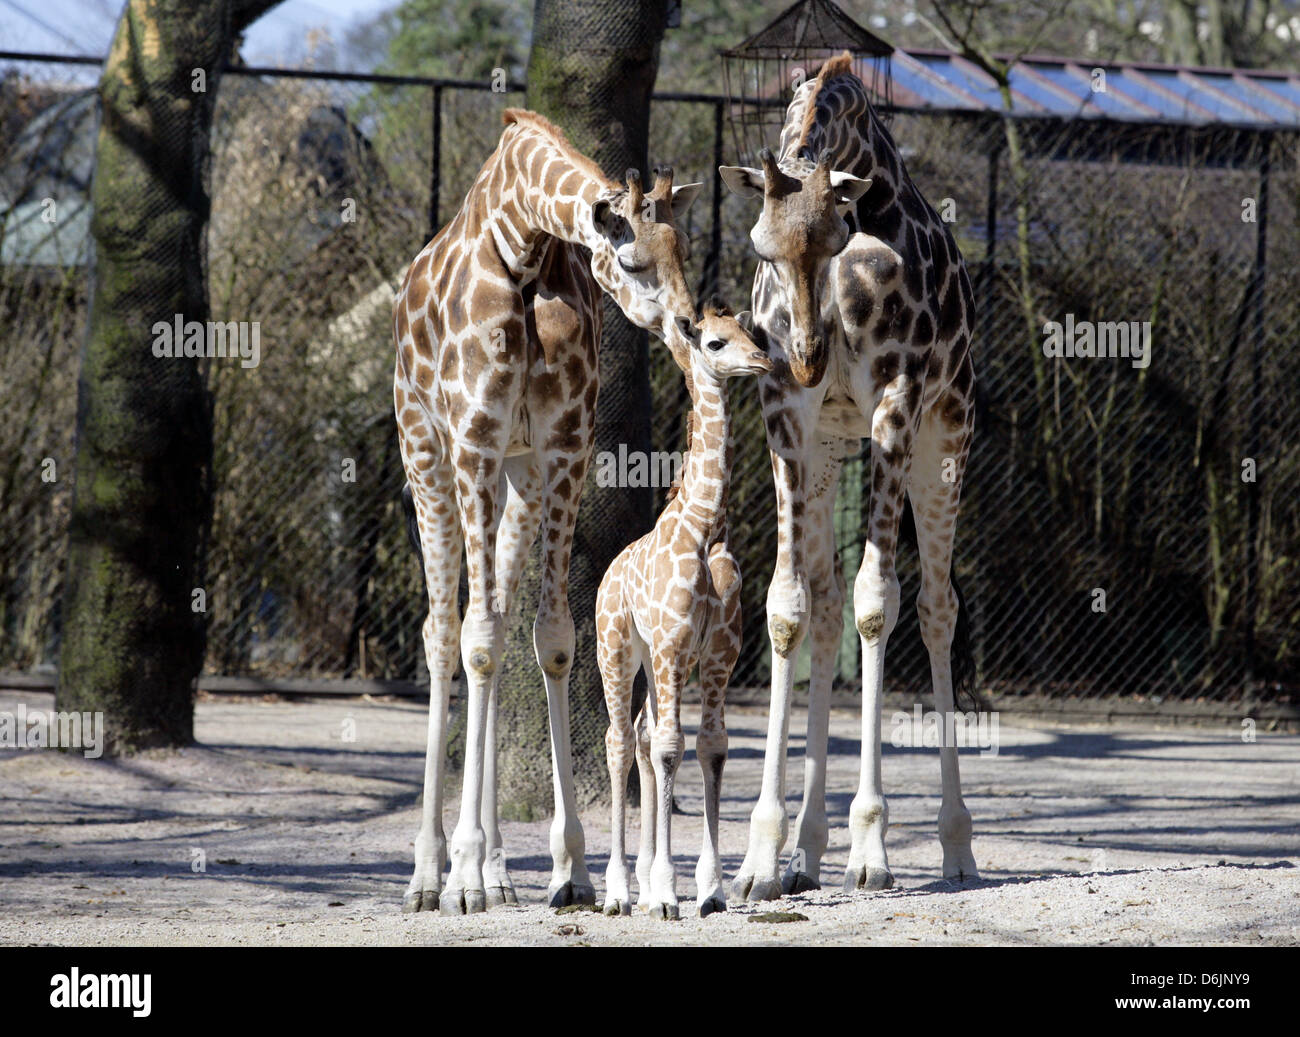 Dix jours "girafe" ugambi se tient entre ses parents dans la piscine au zoo Hagenbeck à Hambourg, Allemagne, 23 mars 2012. Mugambi a été dehors pour la première fois. Photo : Daniel Bockwoldt Banque D'Images